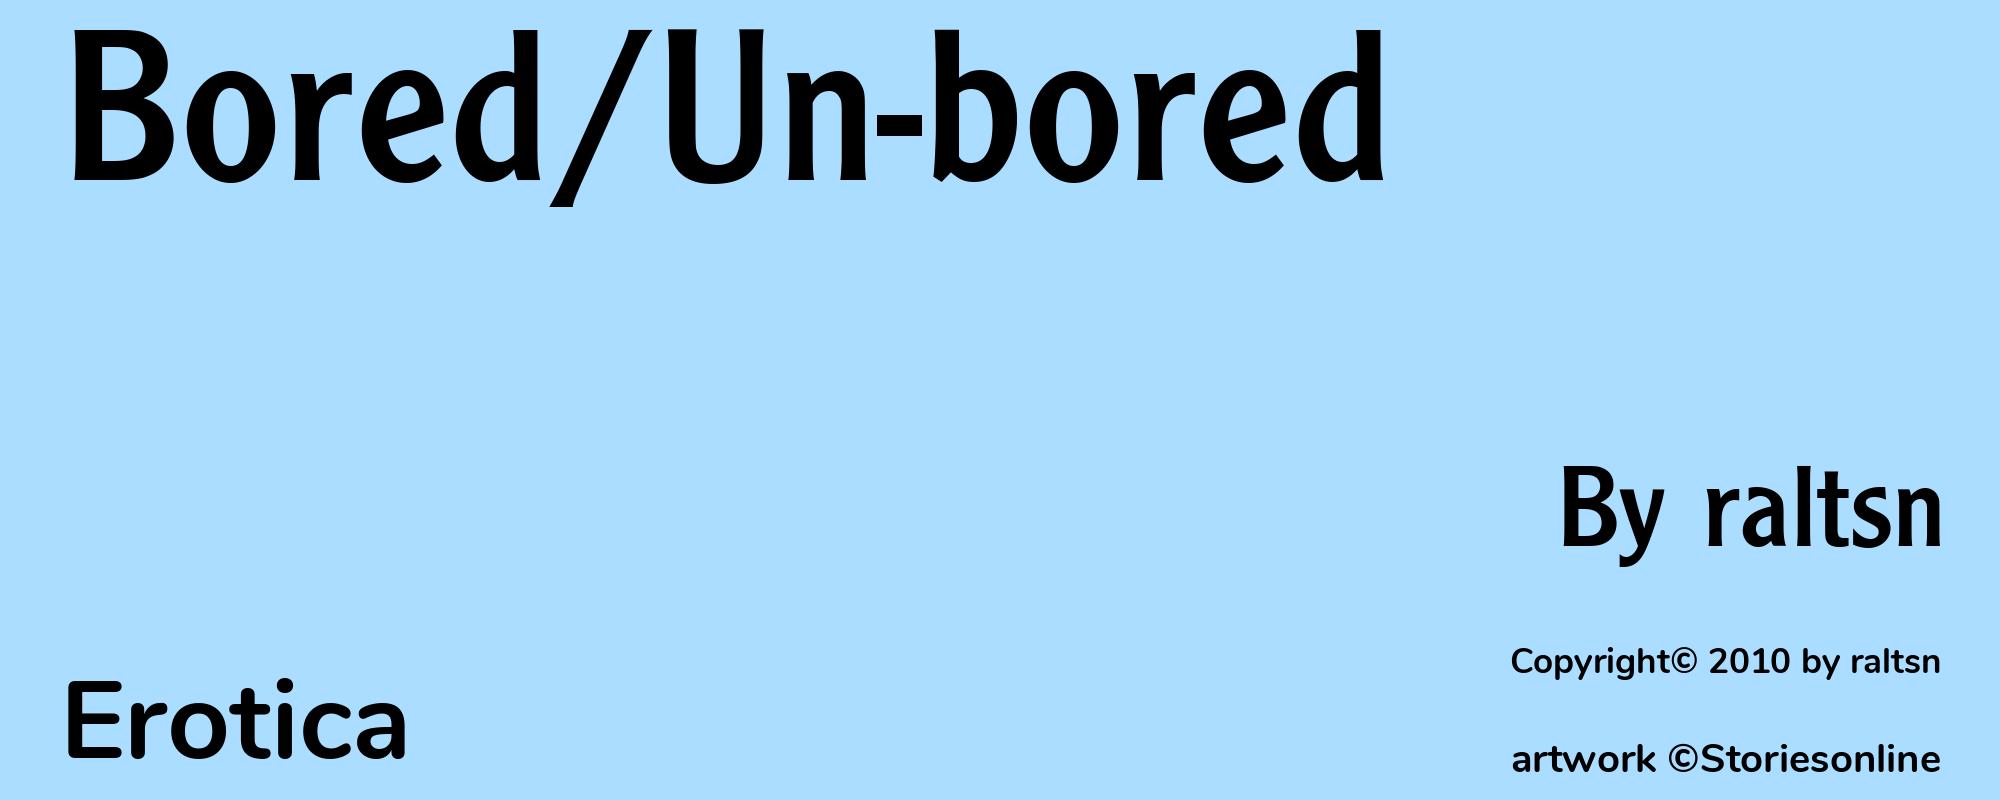 Bored/Un-bored - Cover